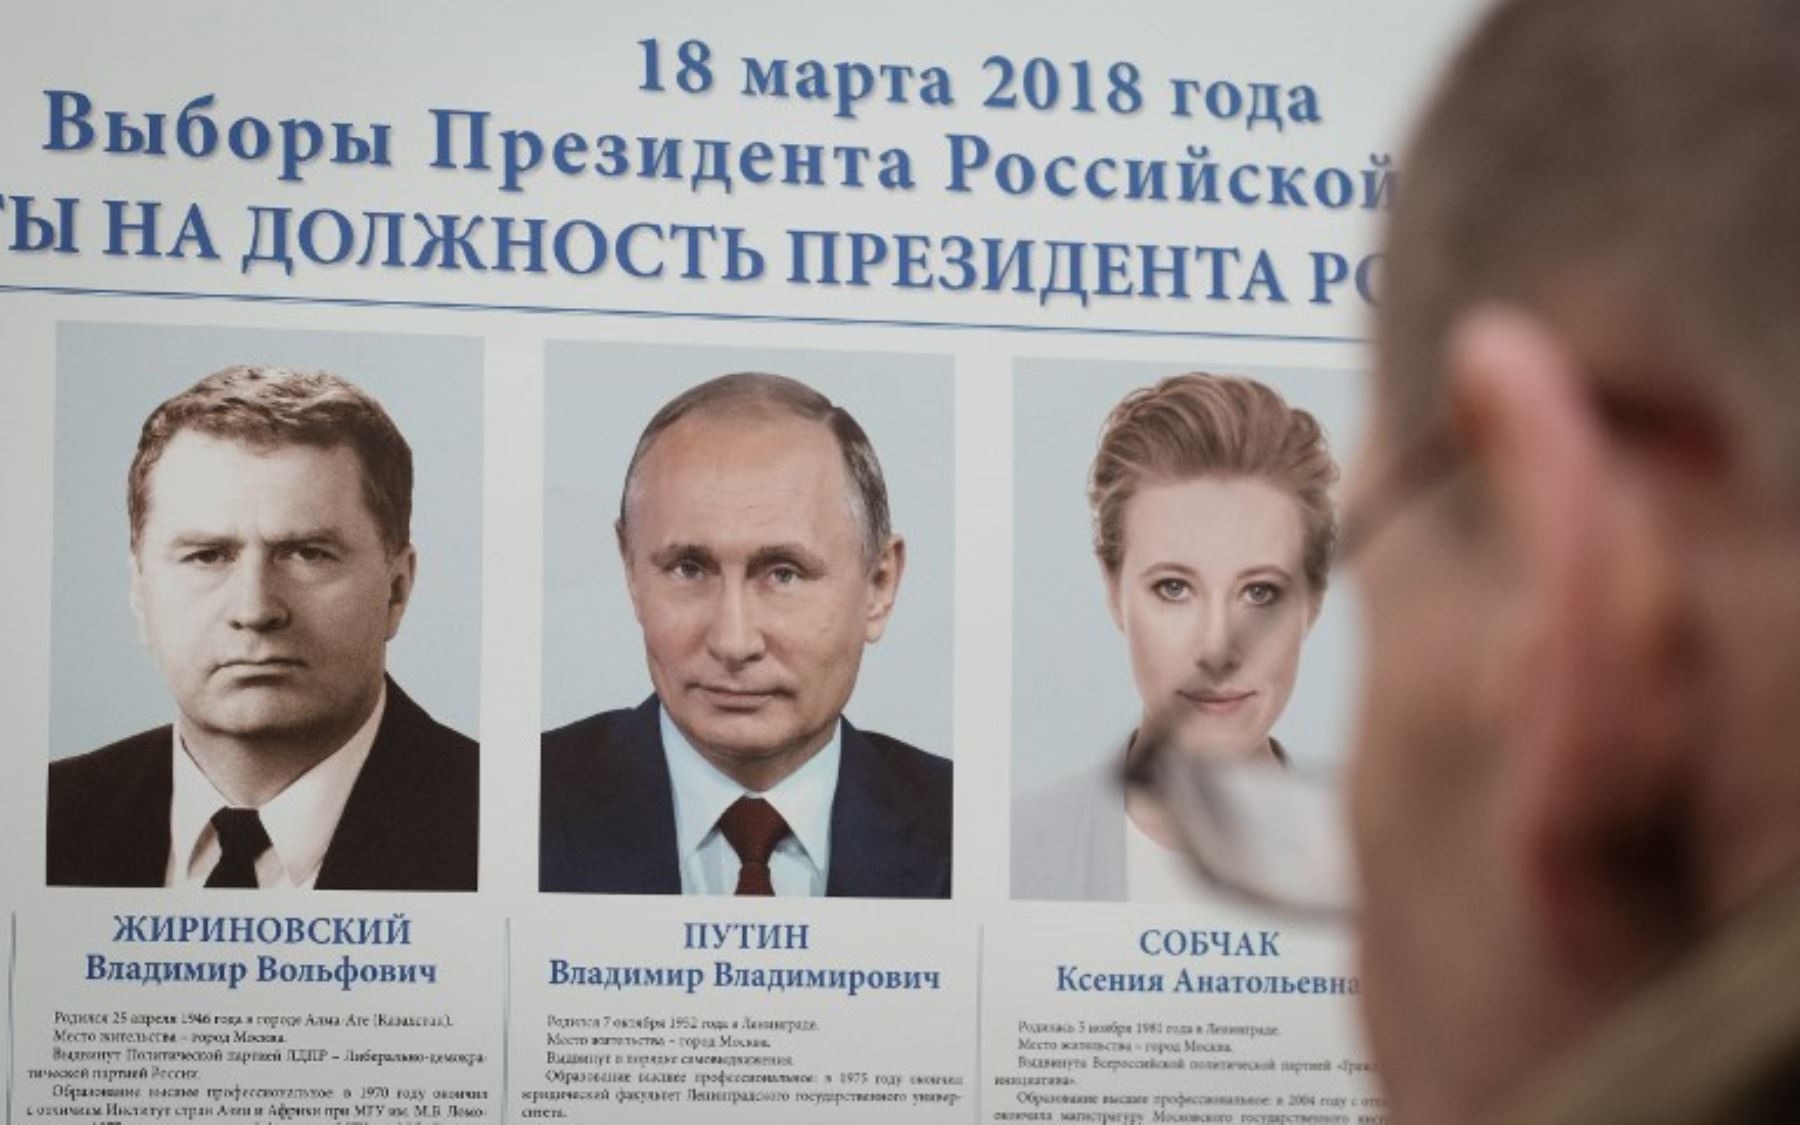 Una persona mira un cartel que muestra los candidatos presidenciales en un colegio electoral en la embajada rusa en Minsk durante las elecciones presidenciales de Rusia.Foto:AFP